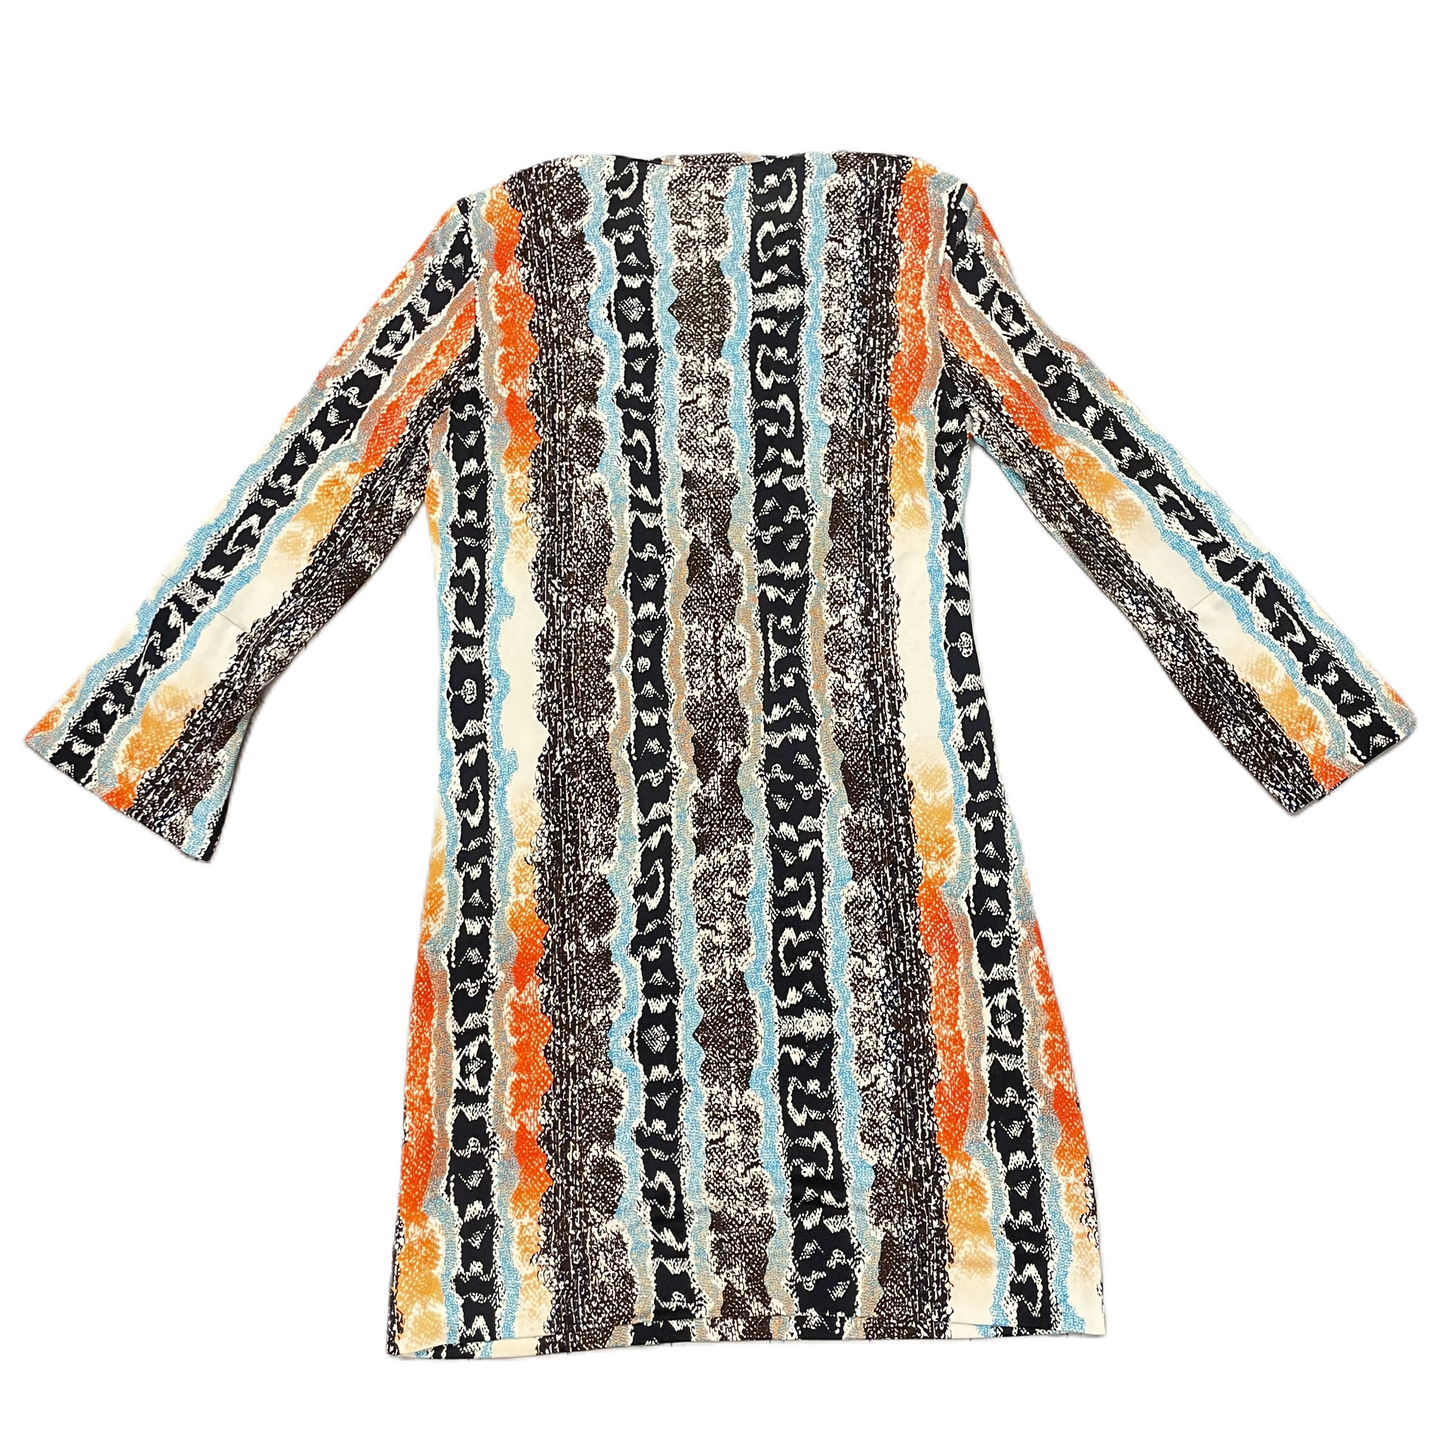 Snakeskin Print Dress Designer By Diane Von Furstenberg, Size: M